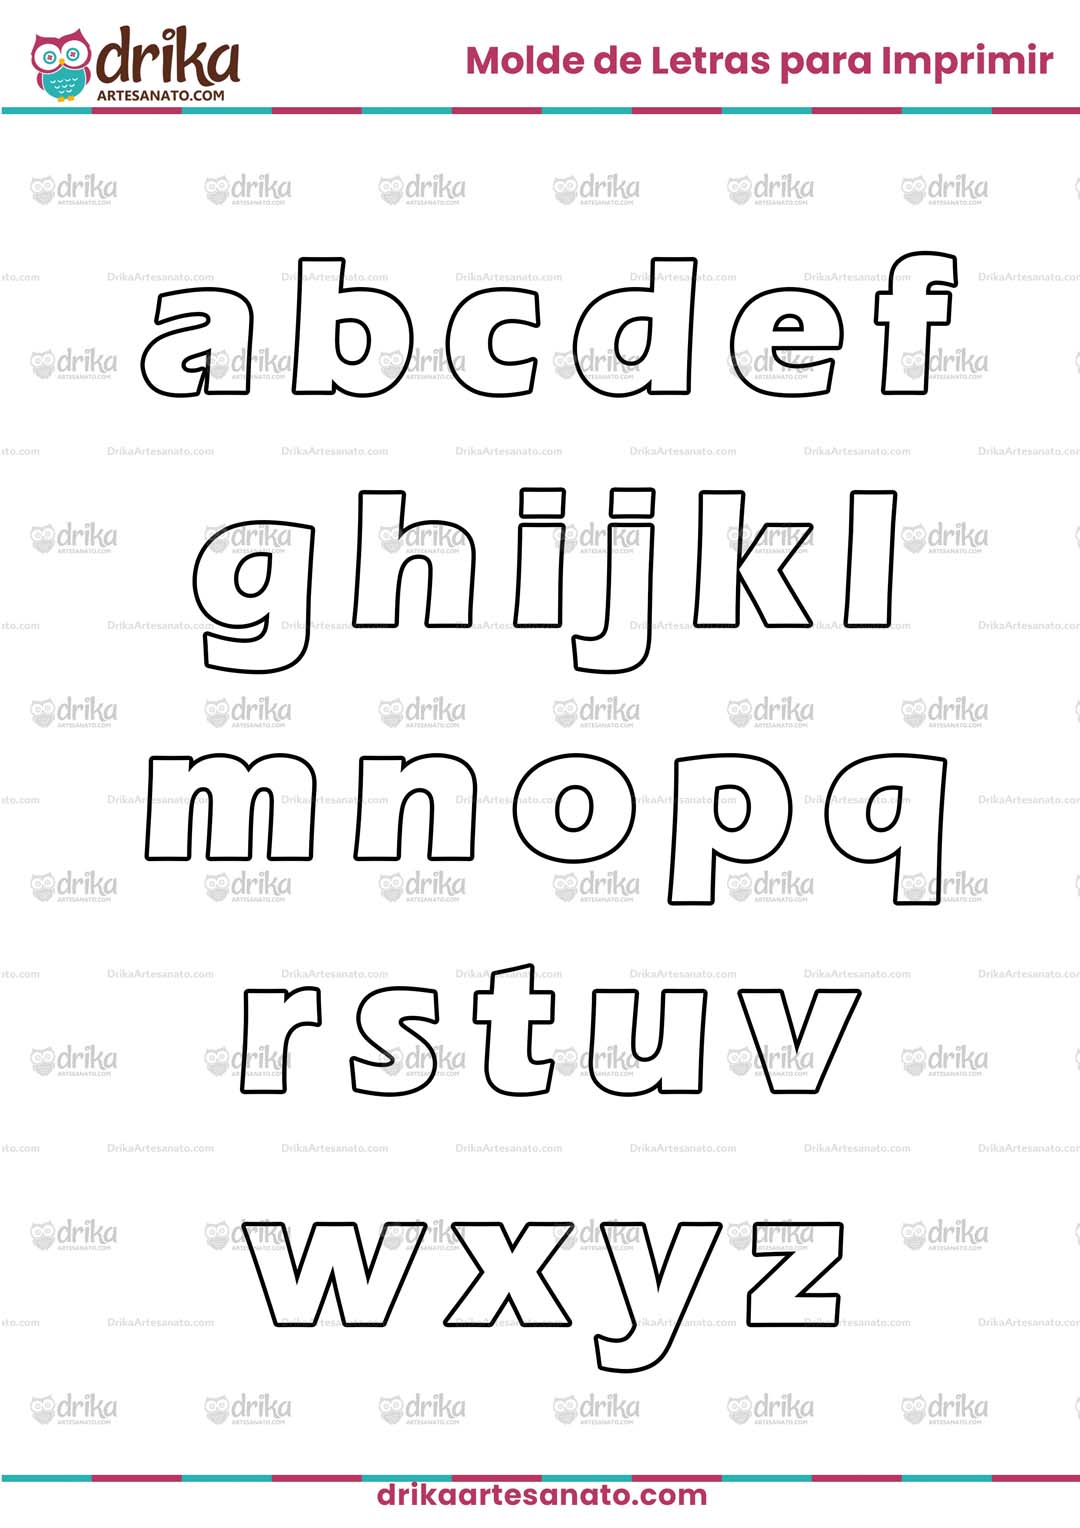 Molde de Letras para Imprimir em PDF